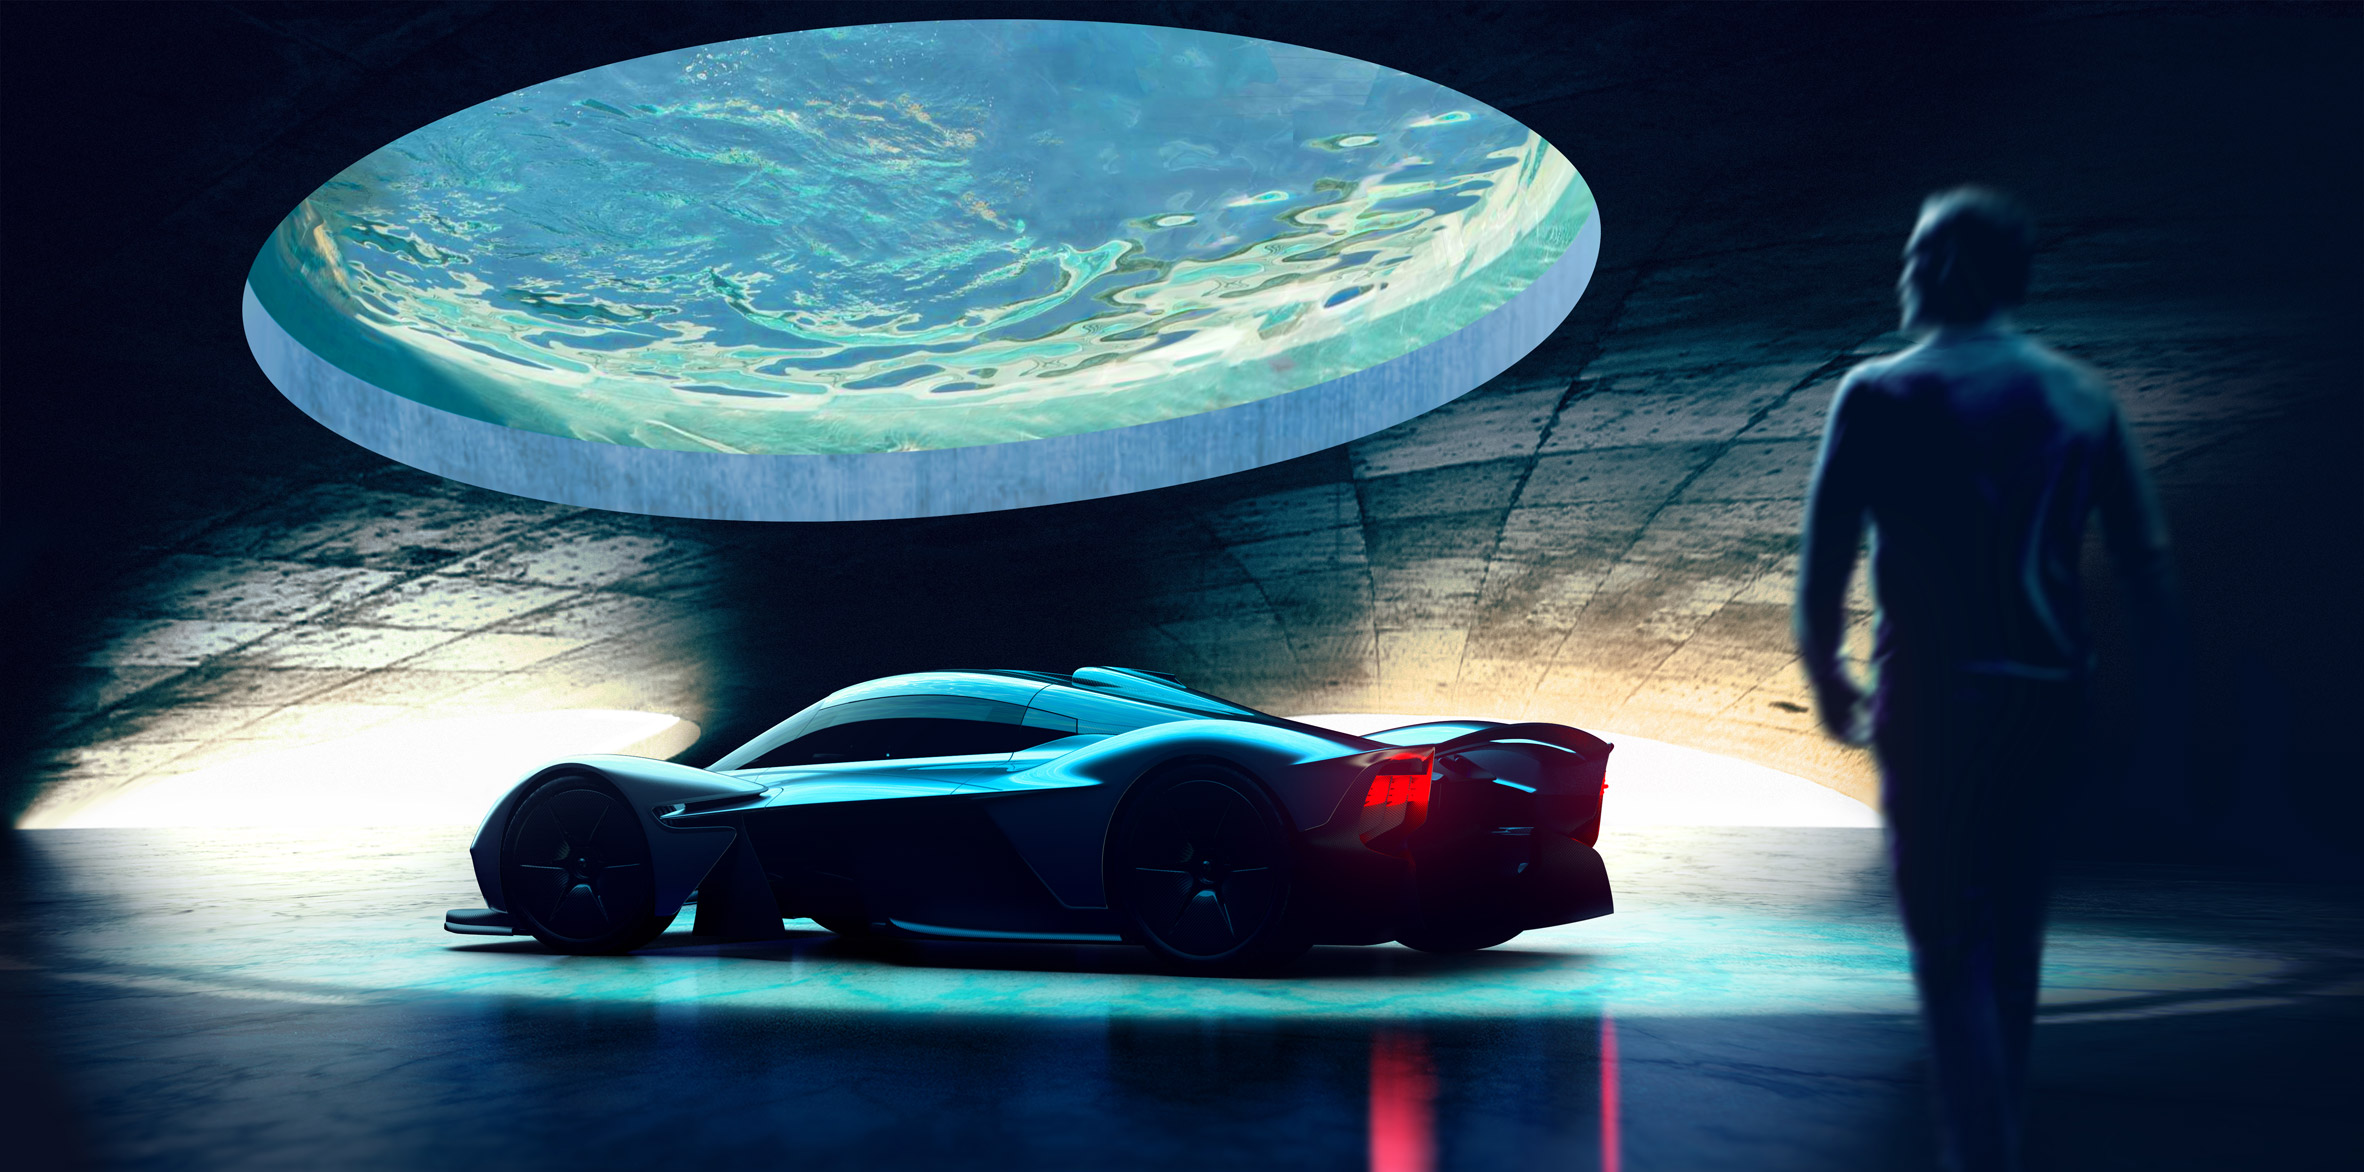 英國超跑品牌Aston Martin推出頂級建築設計服務客製化您的車庫